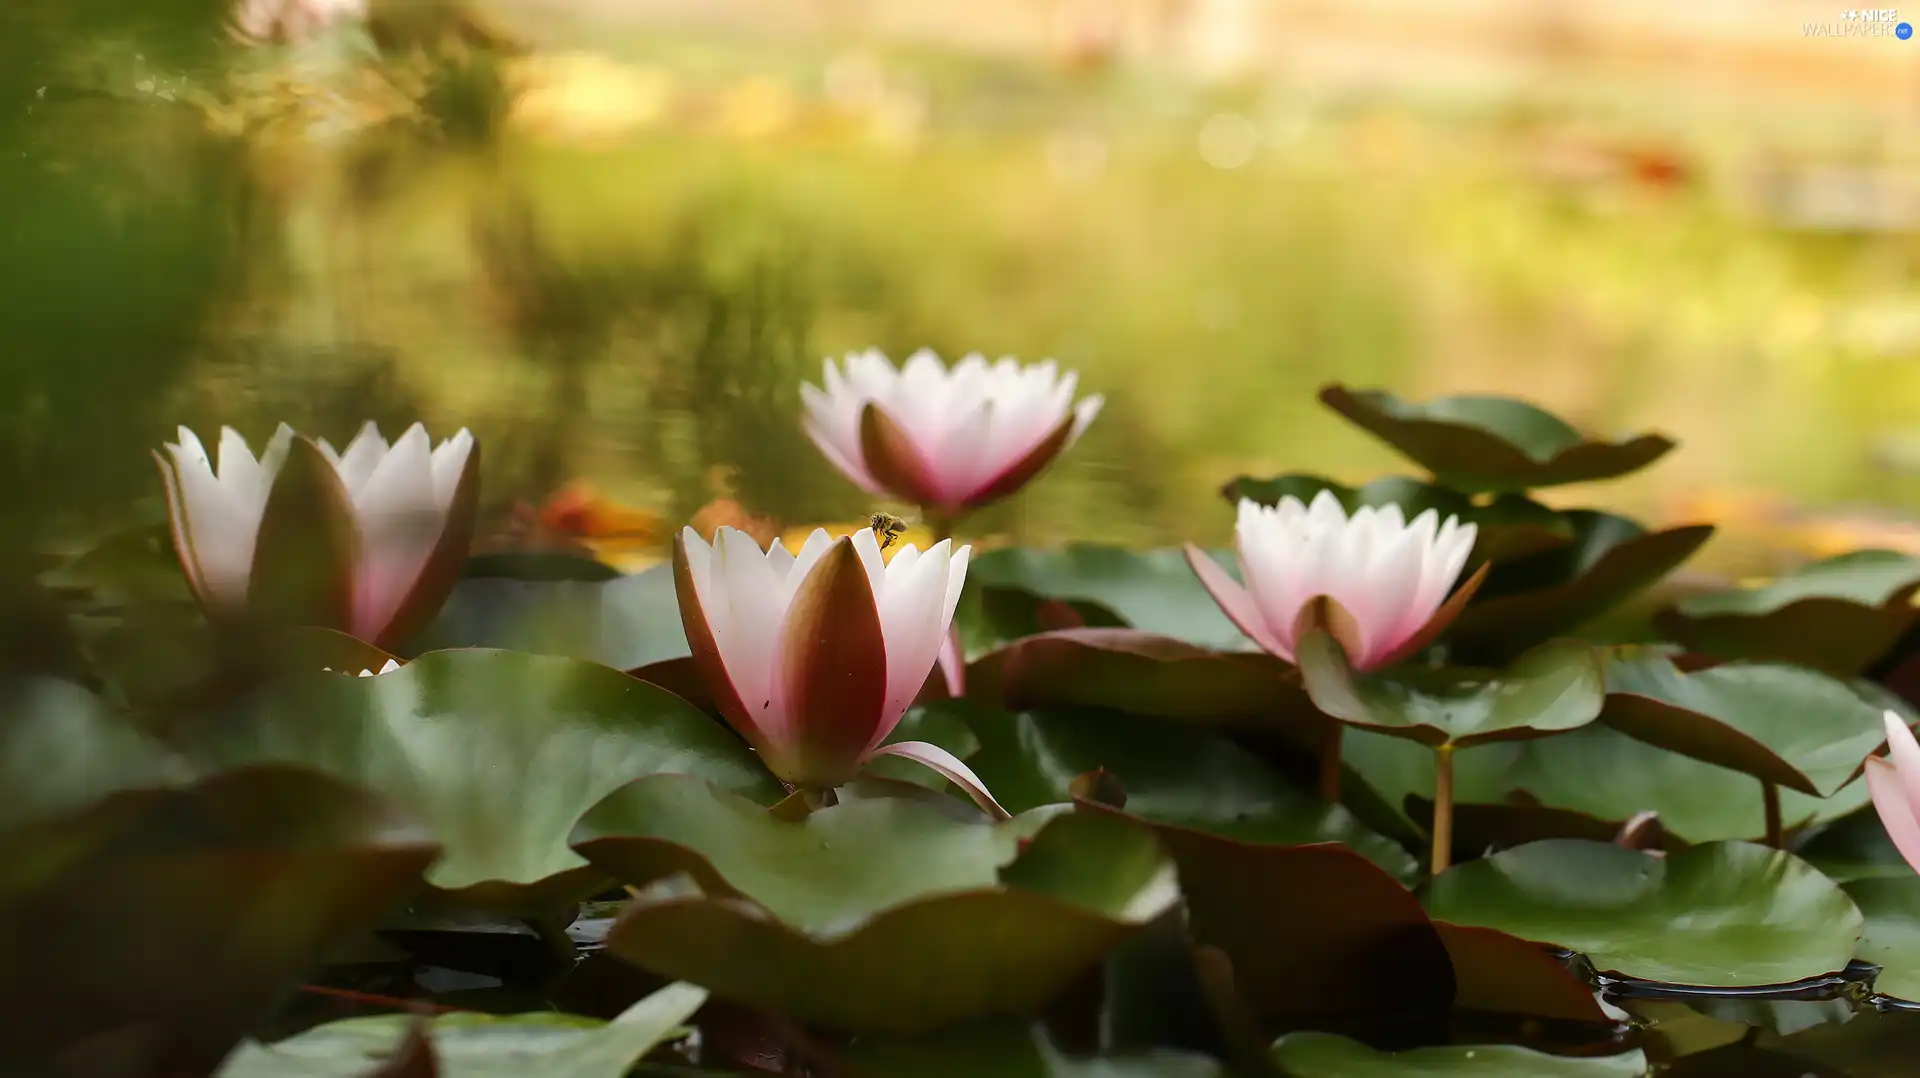 Water lilies, Waterlily, Pond - car, Nenufary